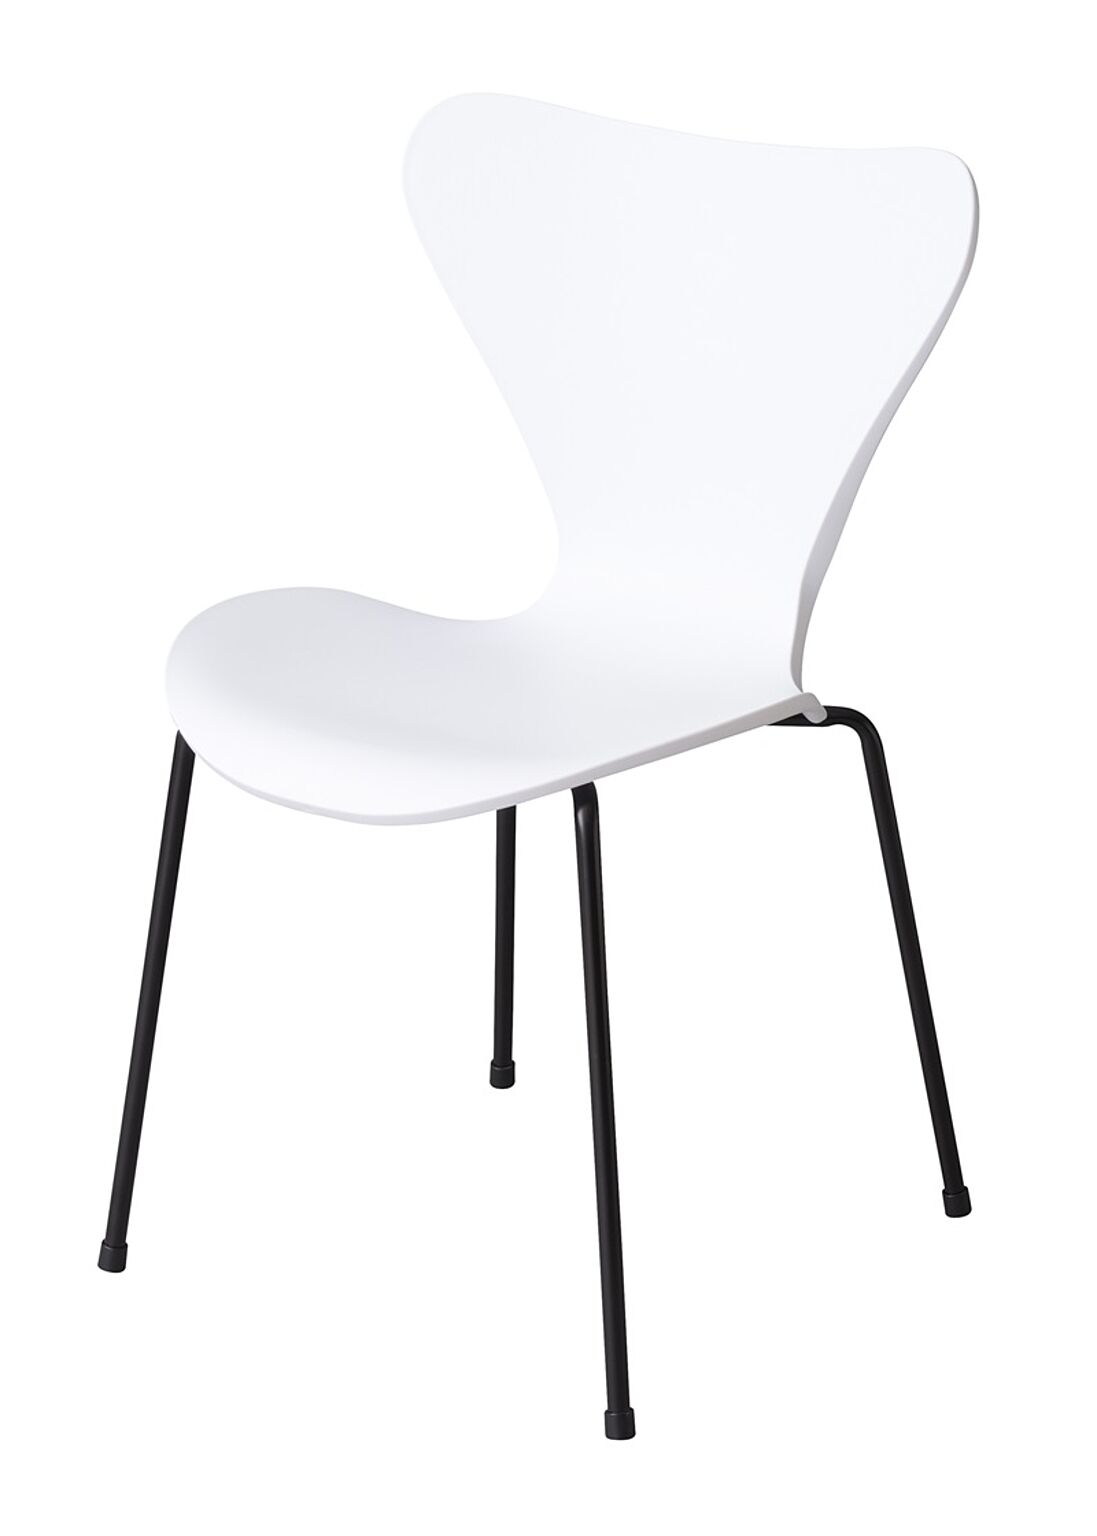 チェア W49.5×D51.5×H80×SH47 ホワイト チェア ダイニングチェア 椅子 いす イス シンプル スチール ポリプロピレン おしゃれ デスク グレー ホワイト イエロー